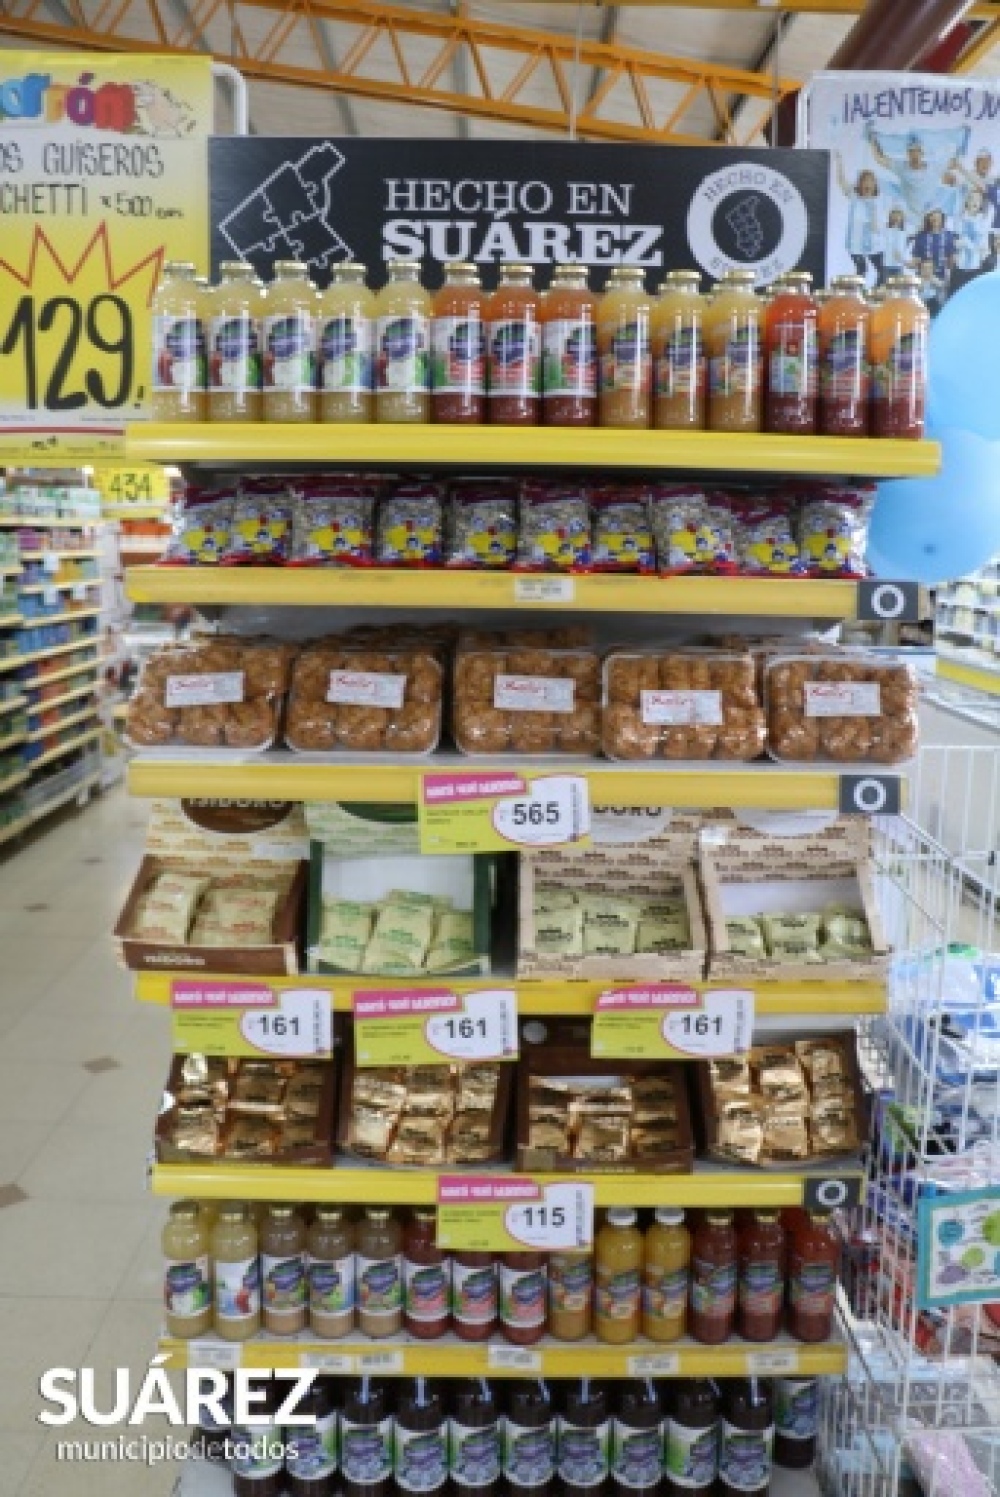 El programa “Hecho en Suárez” impulsa y promociona productos locales
